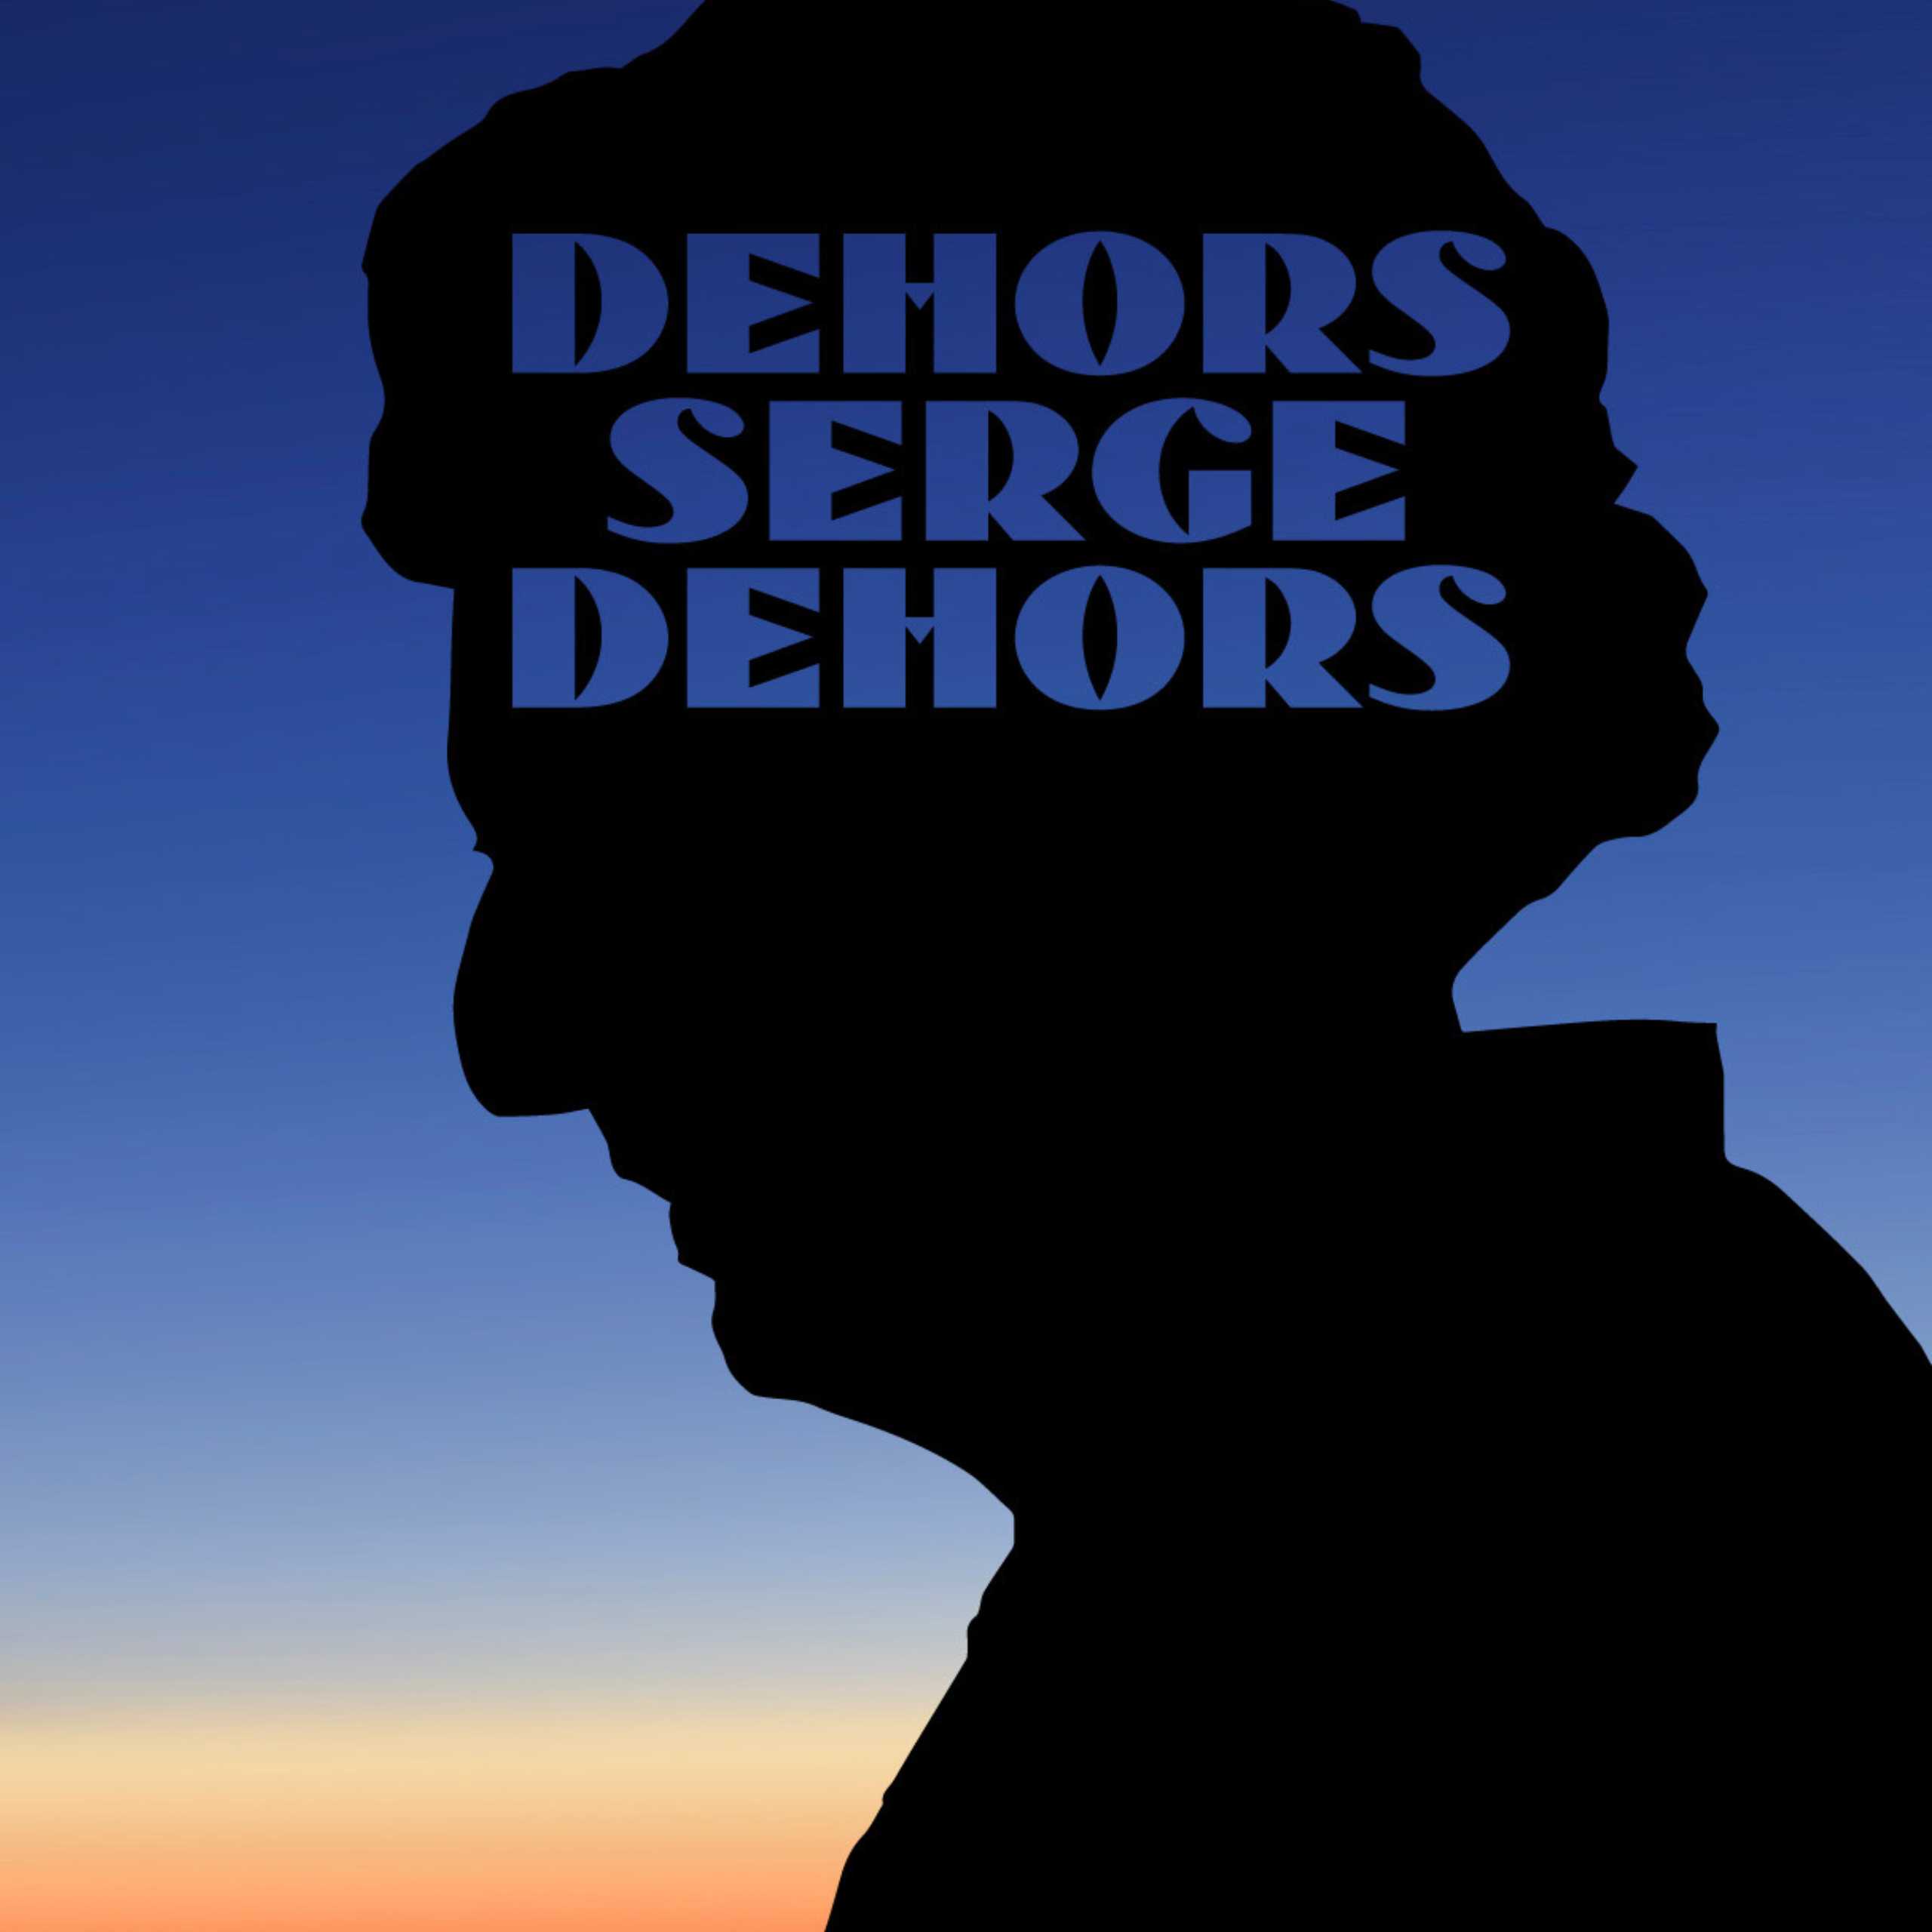 Dehors Serge Dehors - Un film de Martin Fournier et Pier-Luc Latulippe présenté à L'Anglicane à Lévis